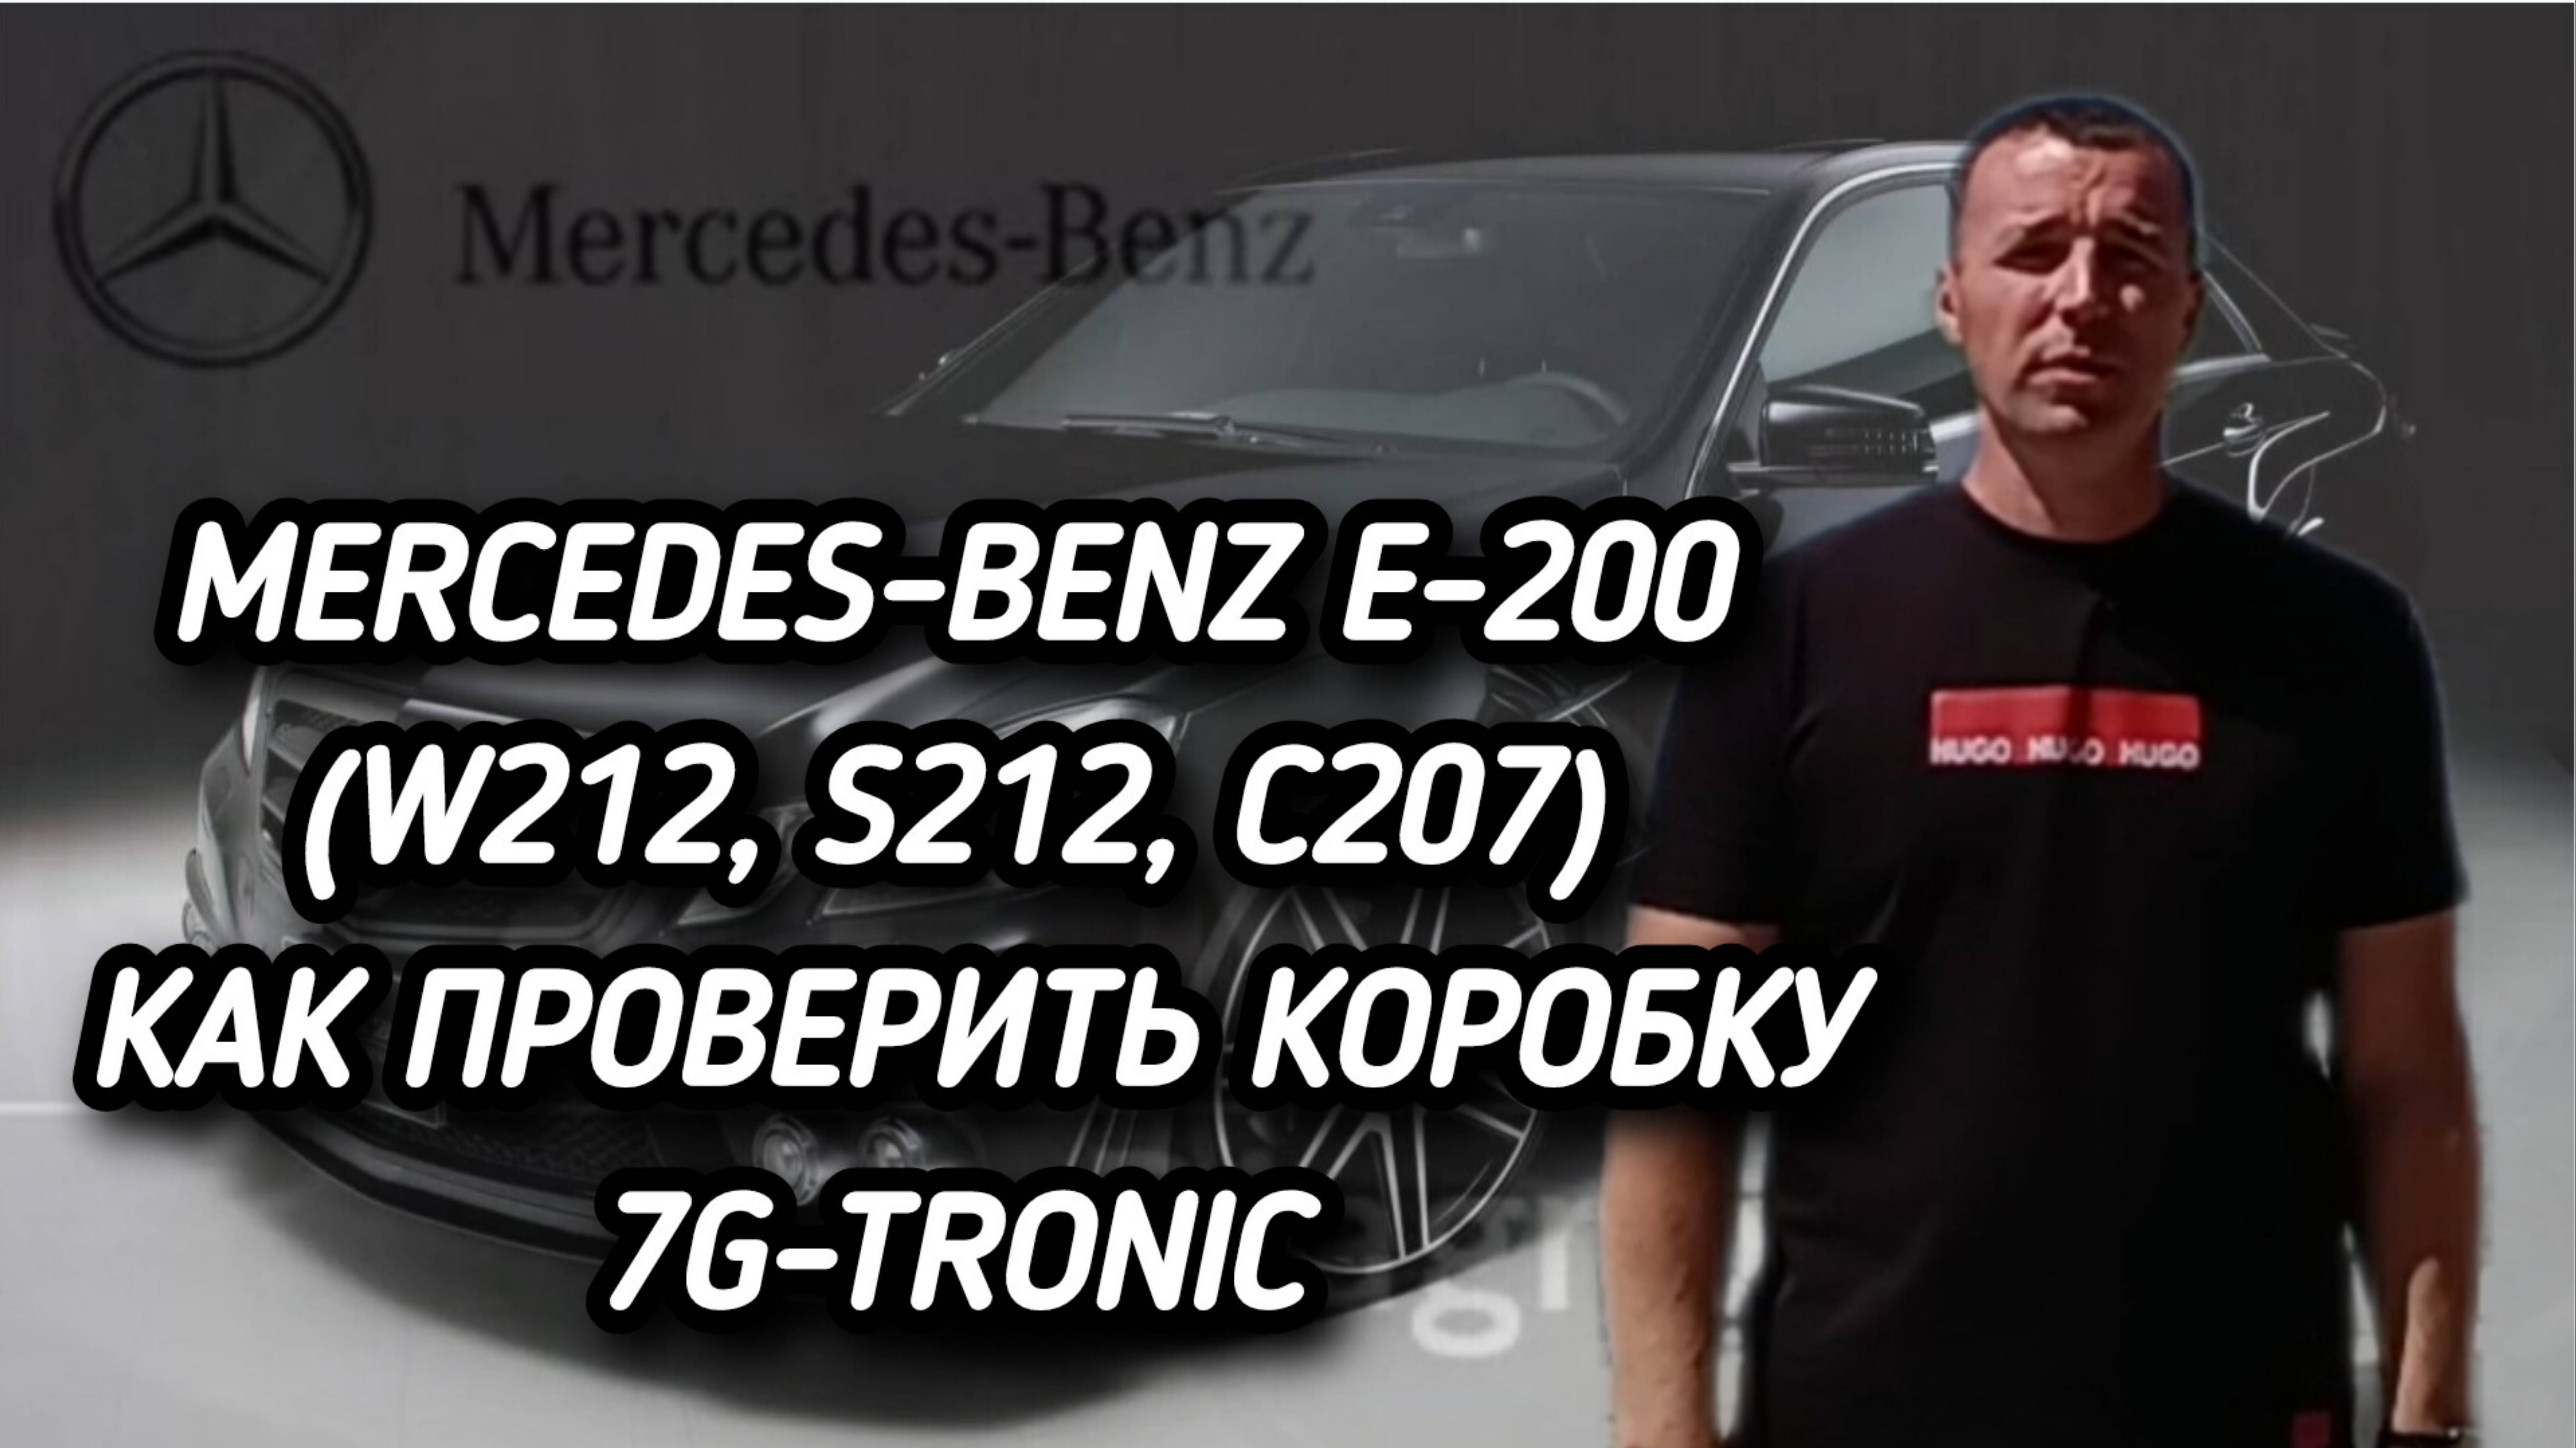 Xentry. Mercedes Benz E200 W212 как проверить коробку перед покупкой. #автоподборастрахань